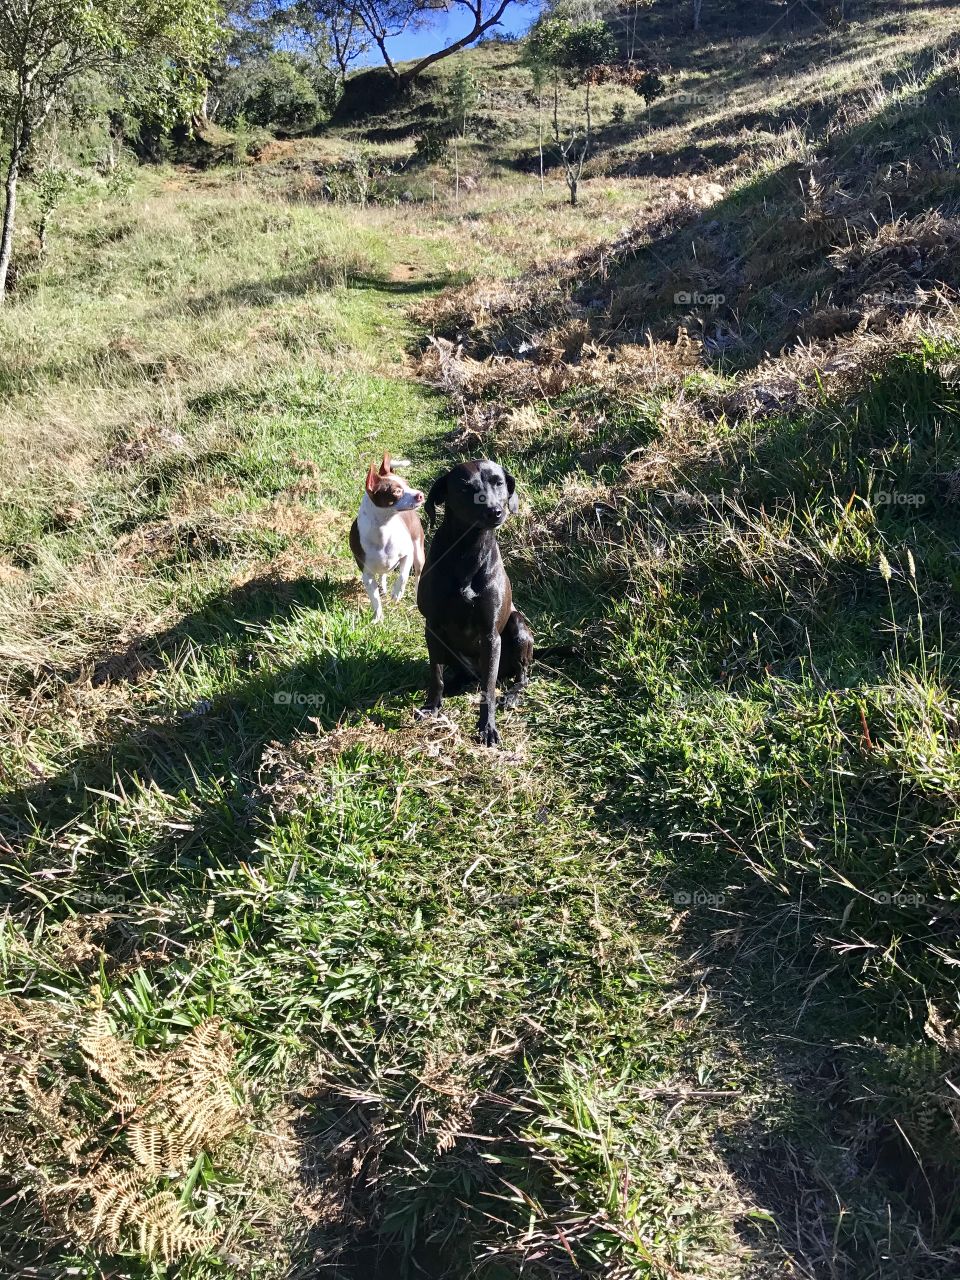 walking 
Happy dogs
